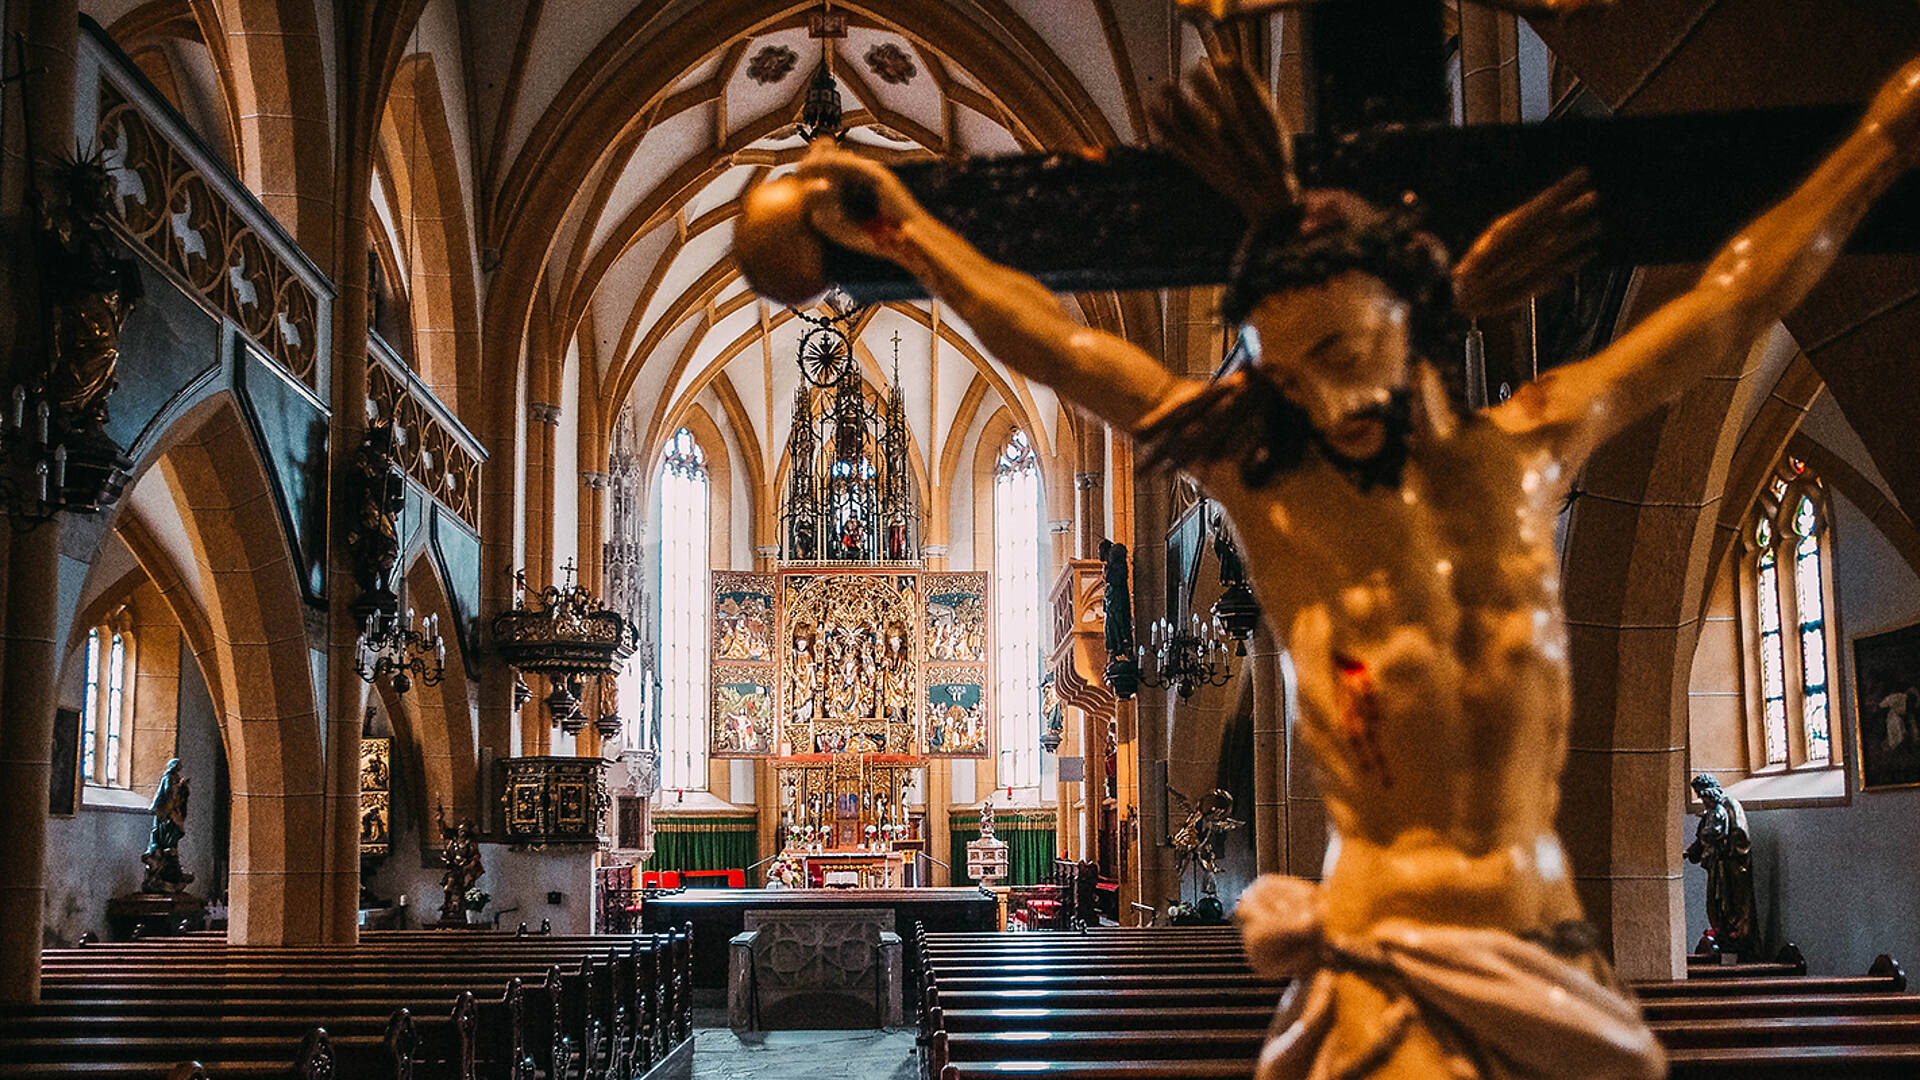 Briccius Legende_Hochaltar der Pfarrkirche Heiligenblut